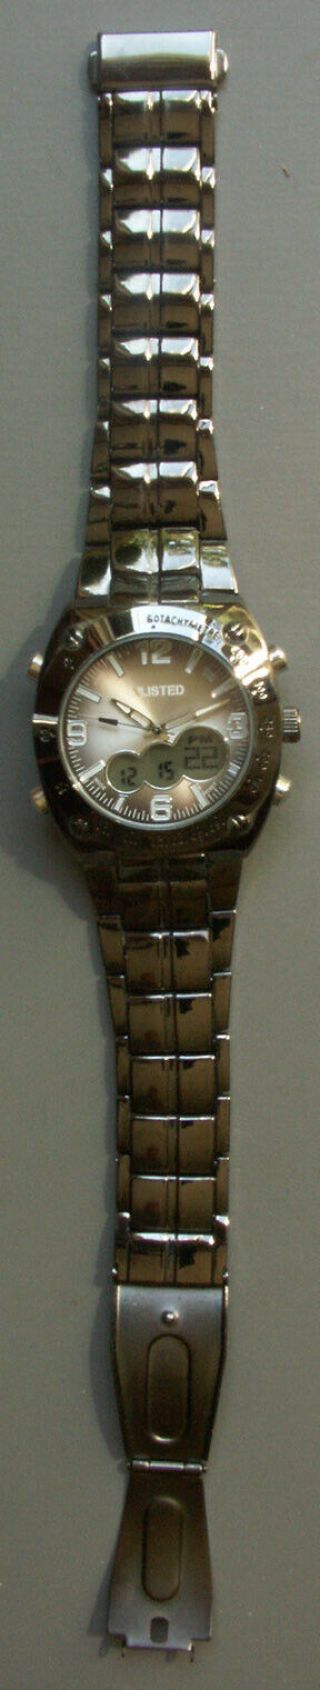 Kenneth Cole UNLISTED Model Man ' s Analog Digital Watch Gunmetal UL1069 4